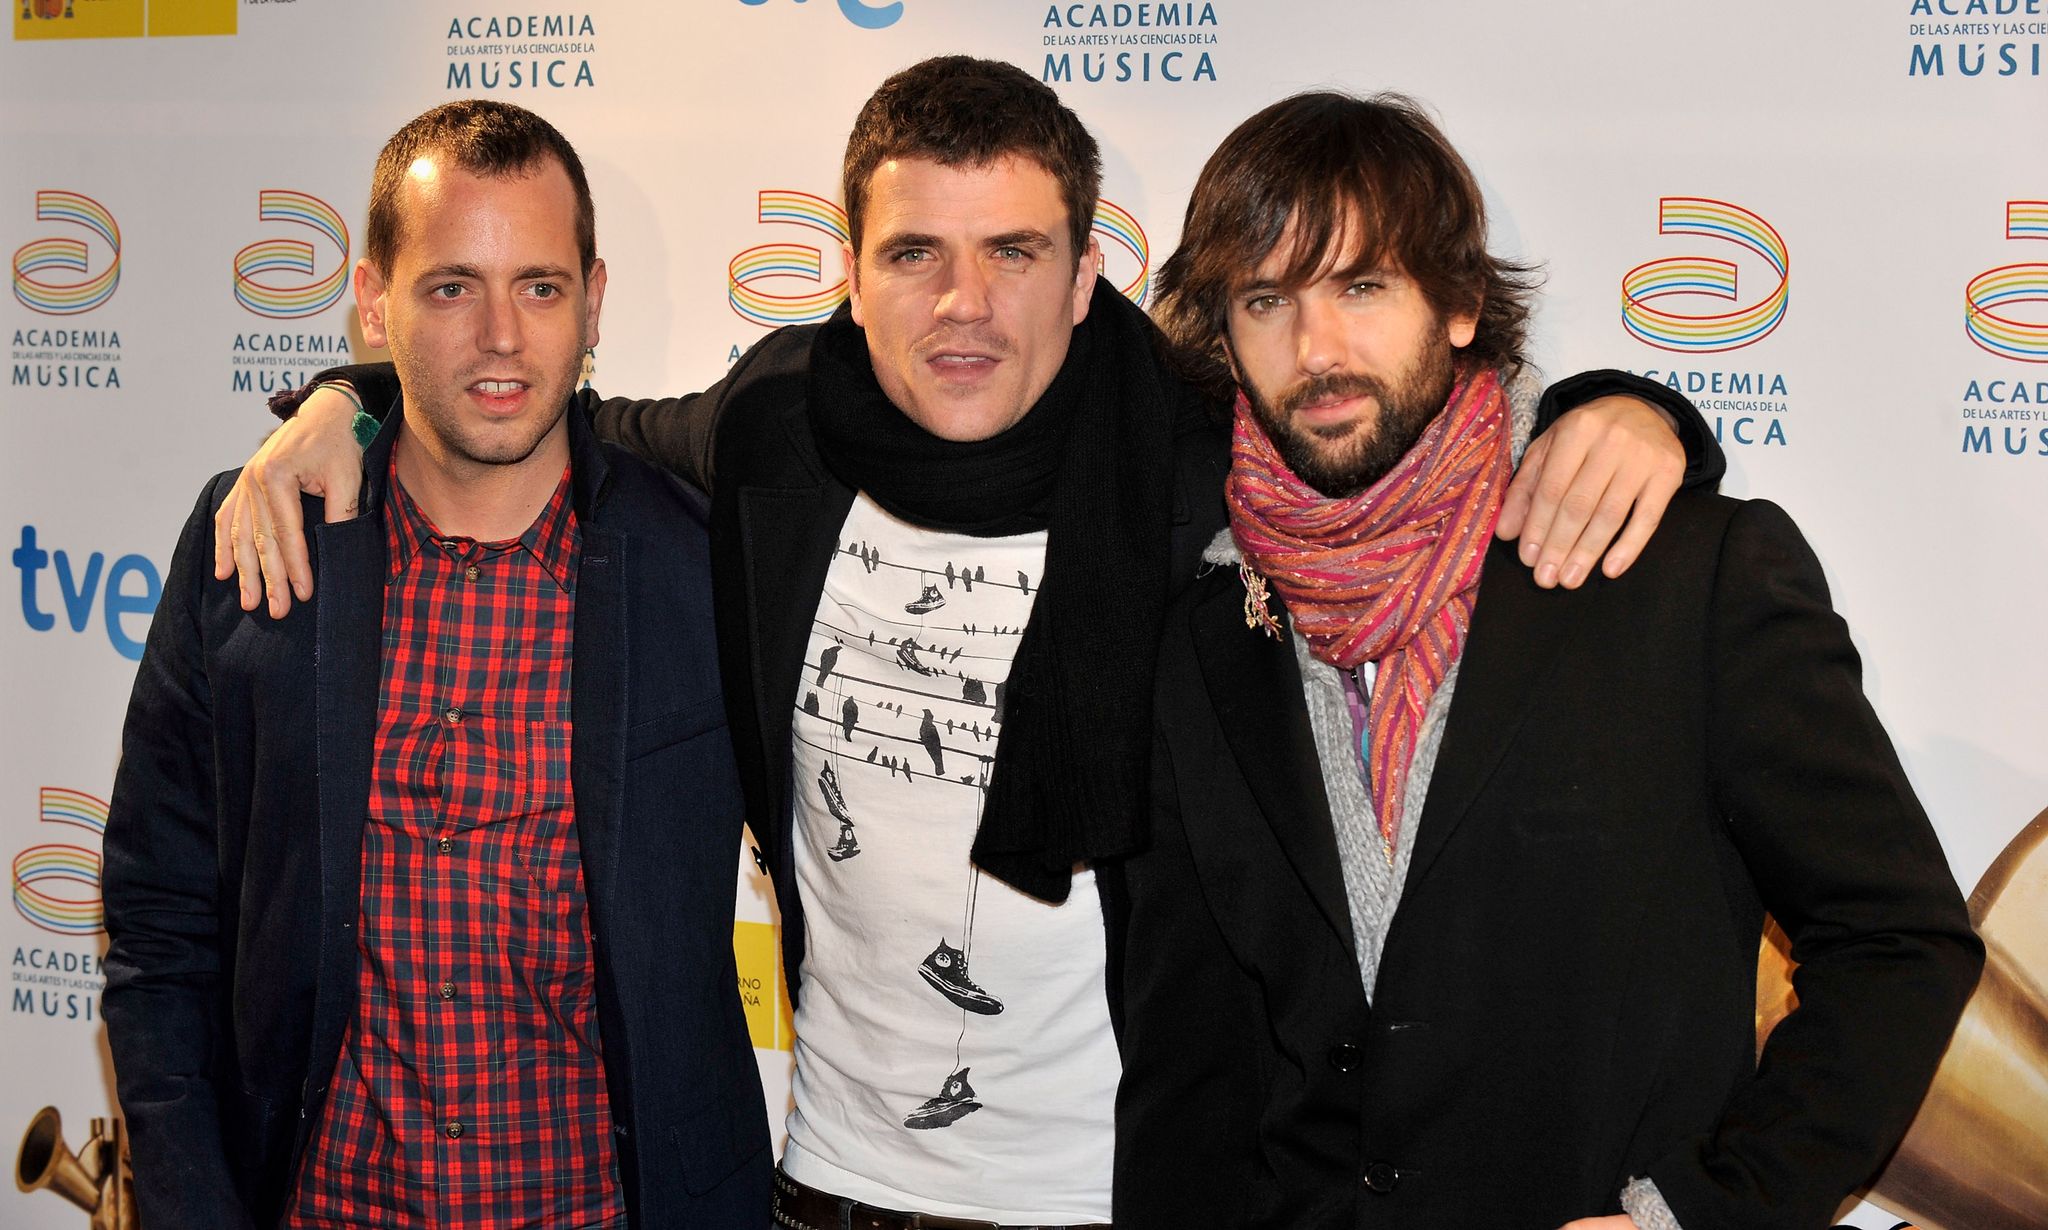 'premios de la musica' awards 2010